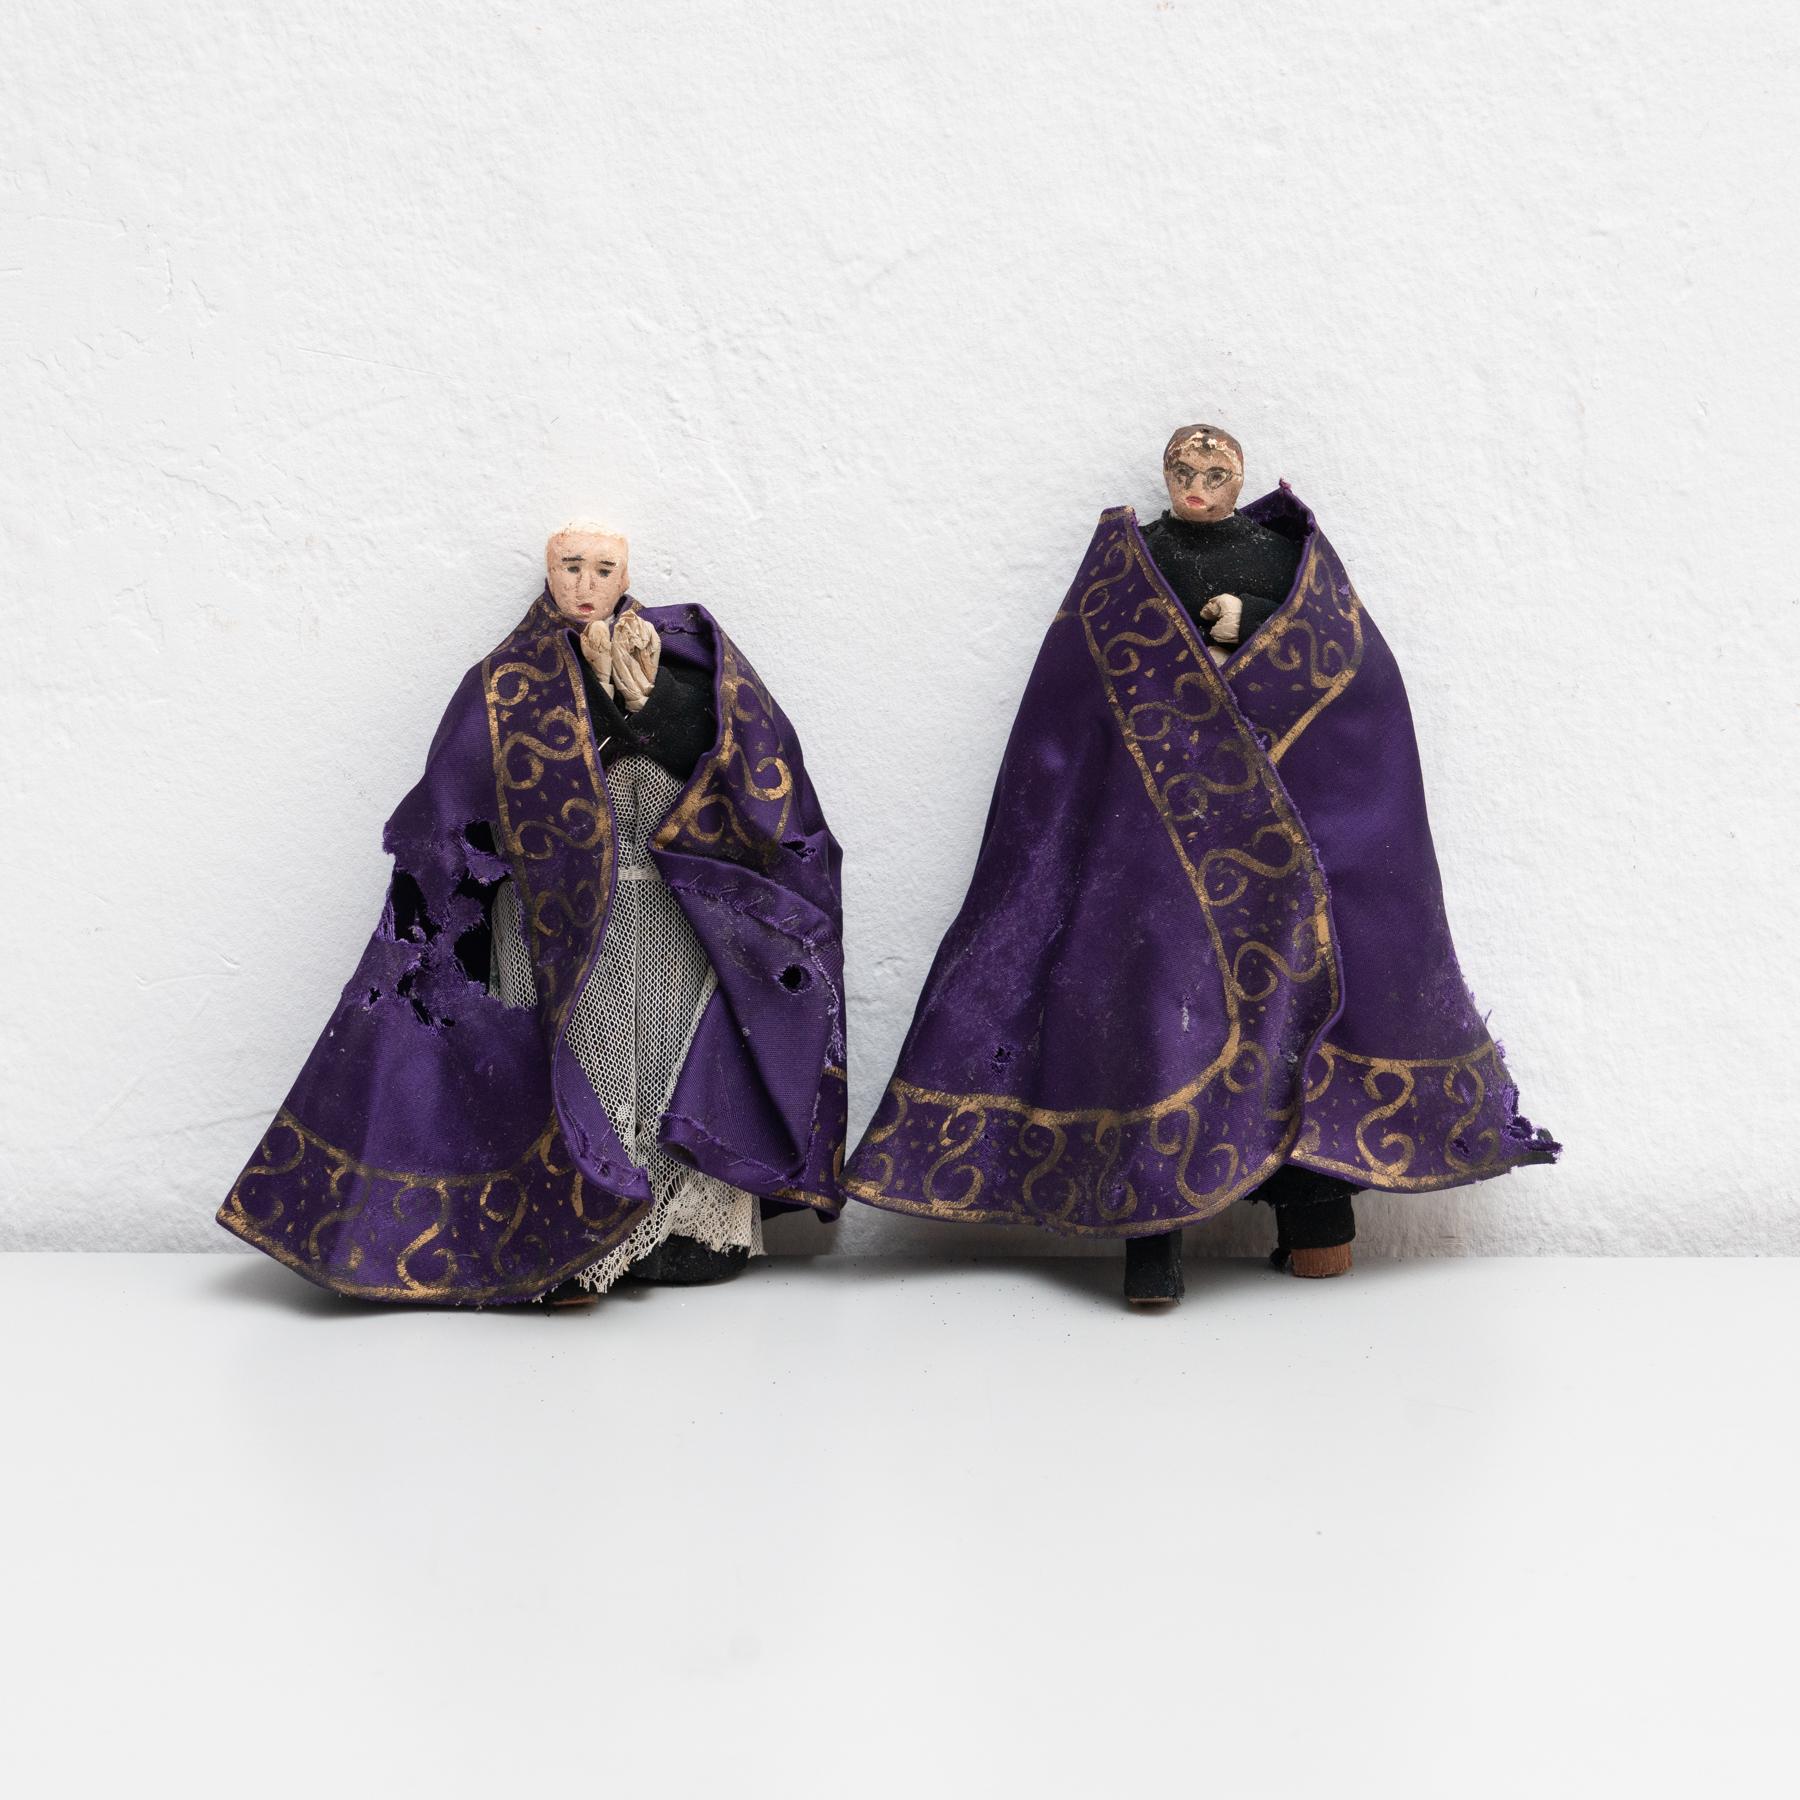 Paire de poupées de chiffon peintes à la main représentant deux prêtres de la paroisse, datant du début du 20e siècle. 

Fabriqué vers 1920 en Espagne.

En état d'origine, avec une usure mineure conforme à l'âge et à l'utilisation, préservant